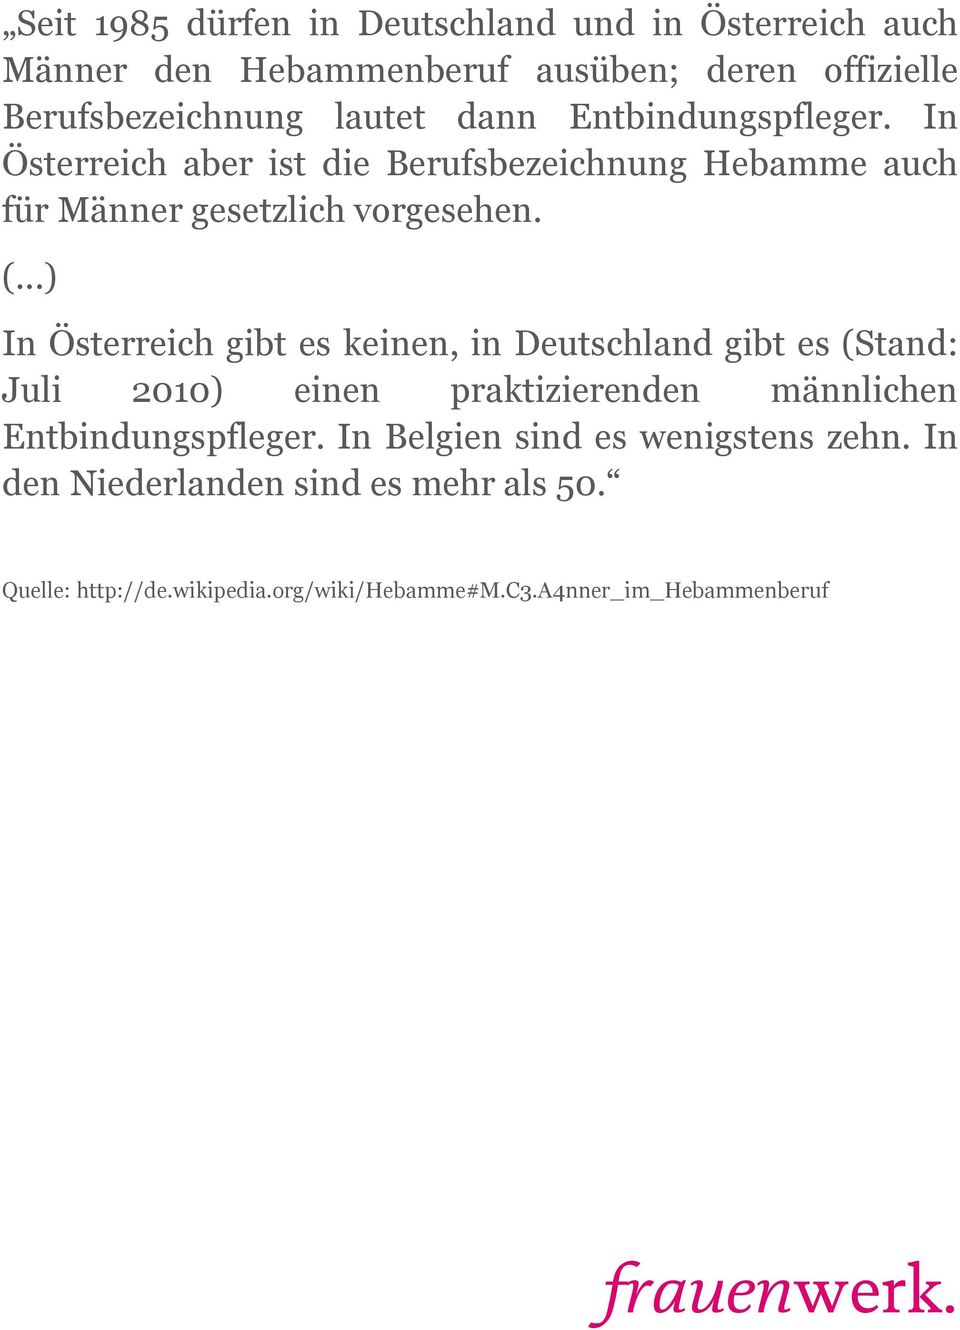 ..) In Österreich gibt es keinen, in Deutschland gibt es (Stand: Juli 2010) einen praktizierenden männlichen Entbindungspfleger.